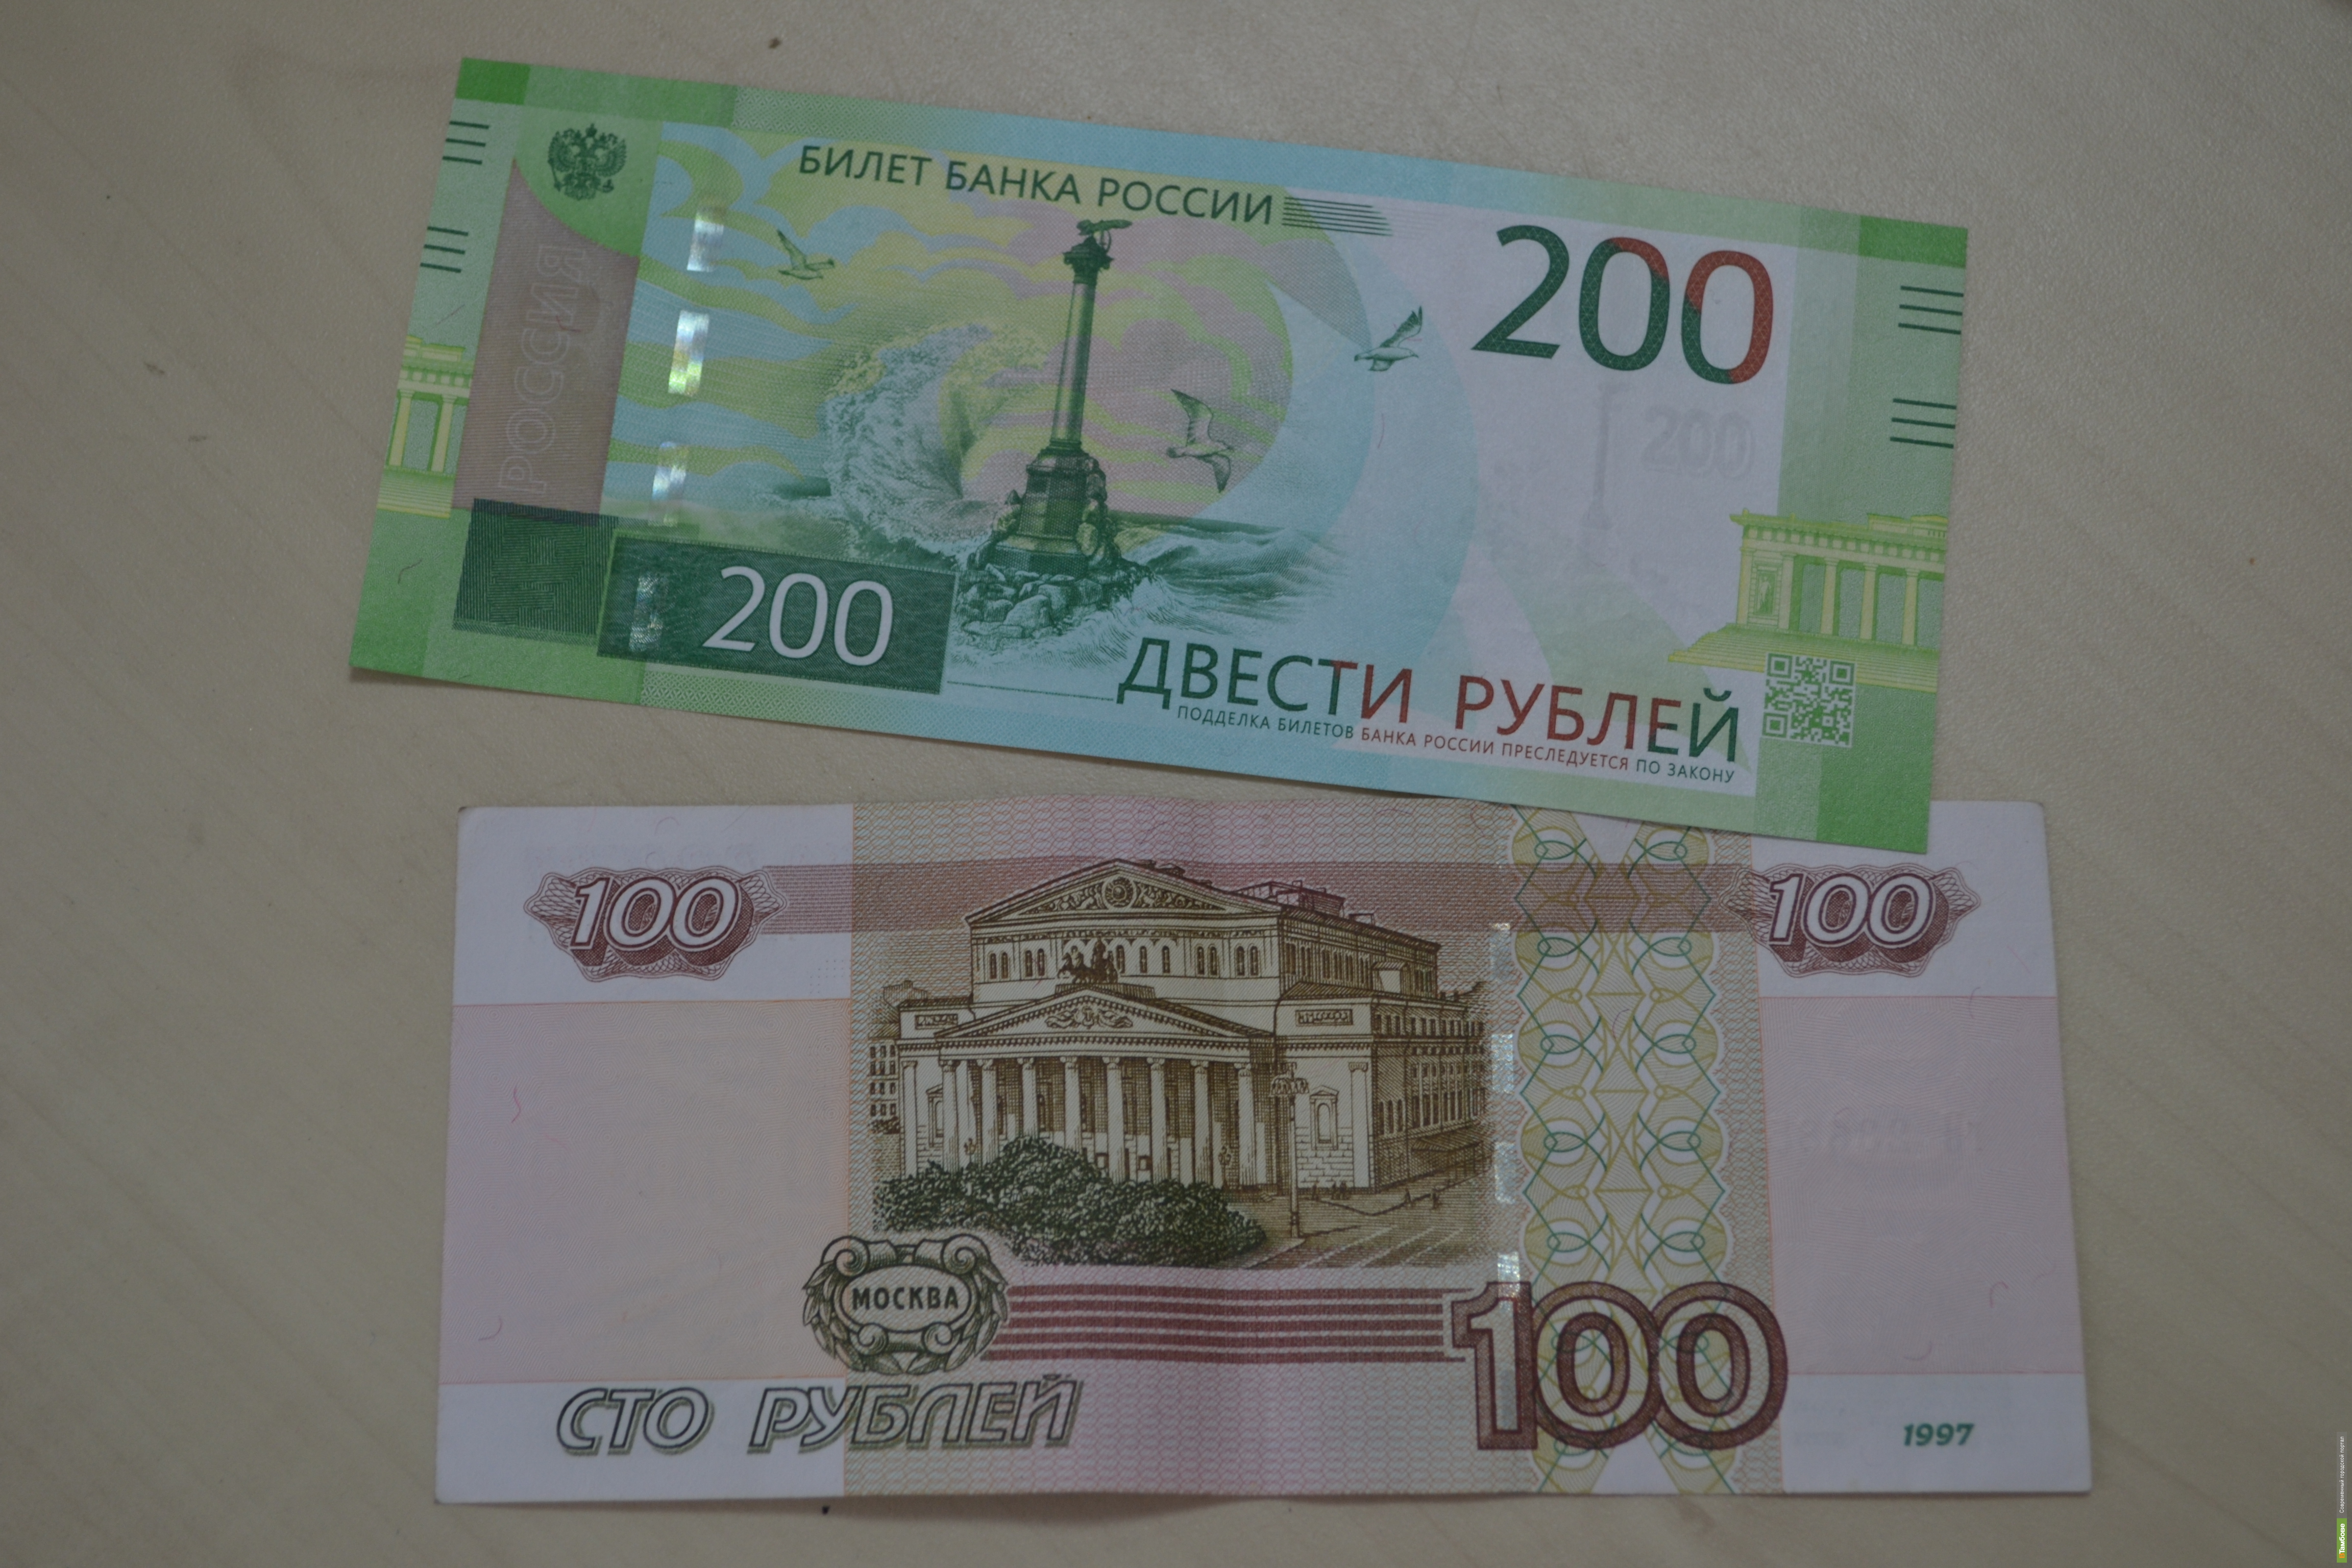 35 200 в рублях. 200 Рублей. 200 Рублей банкнота. 200 Рублей 1997. Новые купюры.